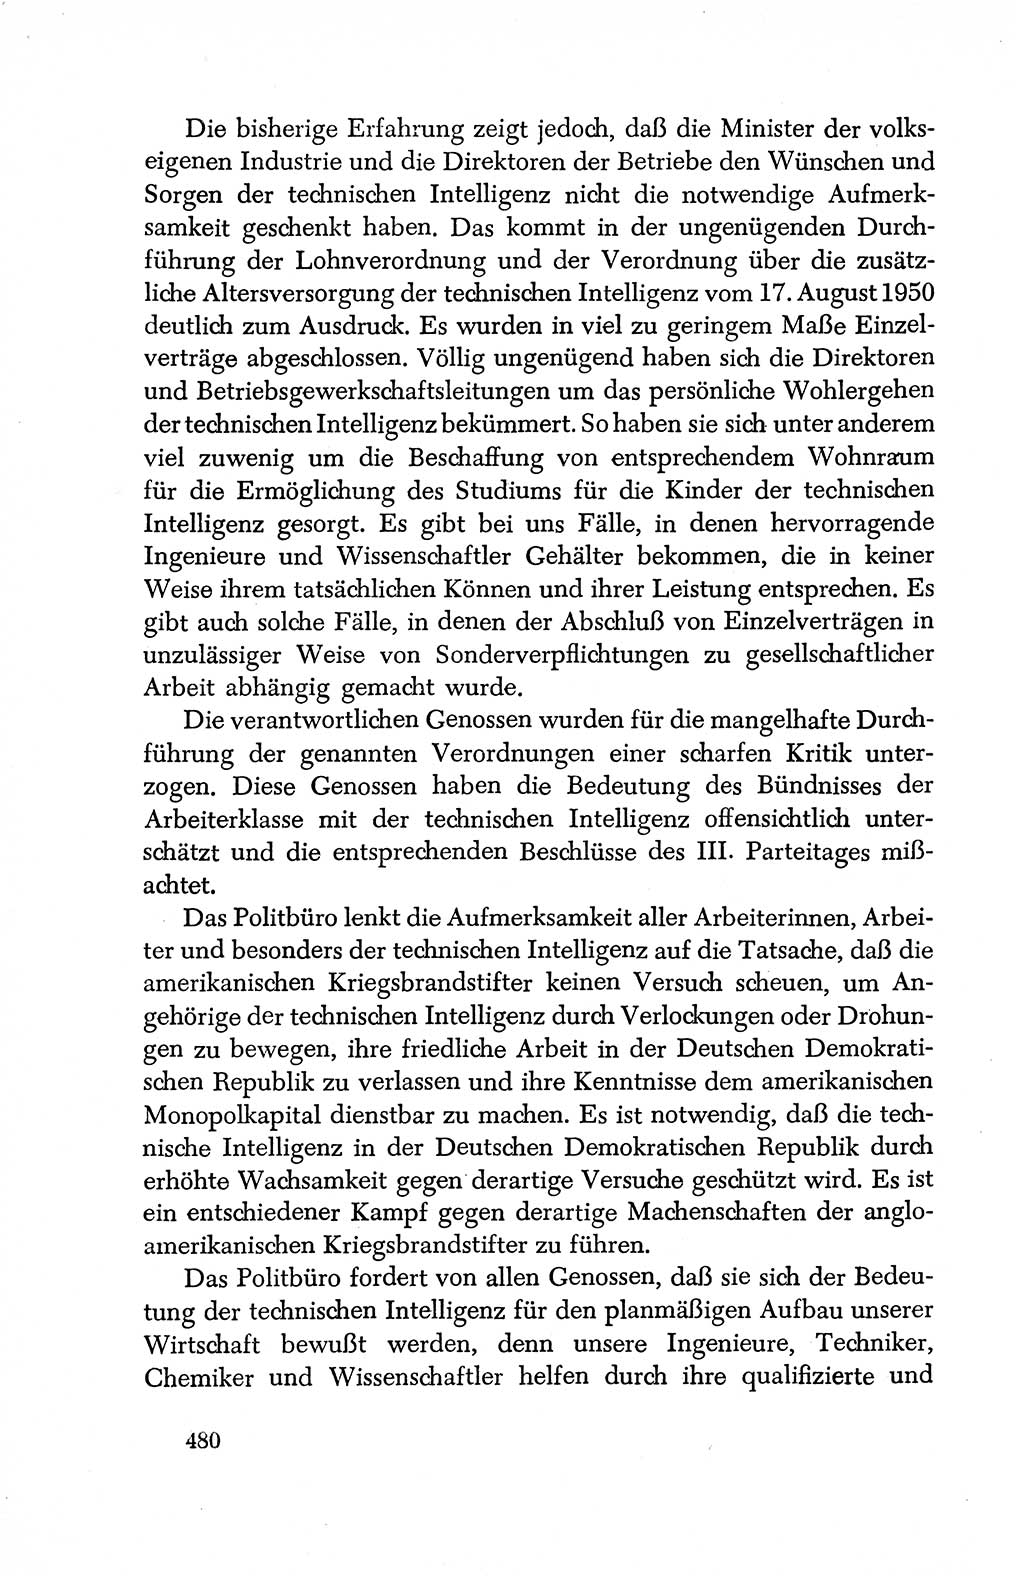 Dokumente der Sozialistischen Einheitspartei Deutschlands (SED) [Deutsche Demokratische Republik (DDR)] 1950-1952, Seite 480 (Dok. SED DDR 1950-1952, S. 480)